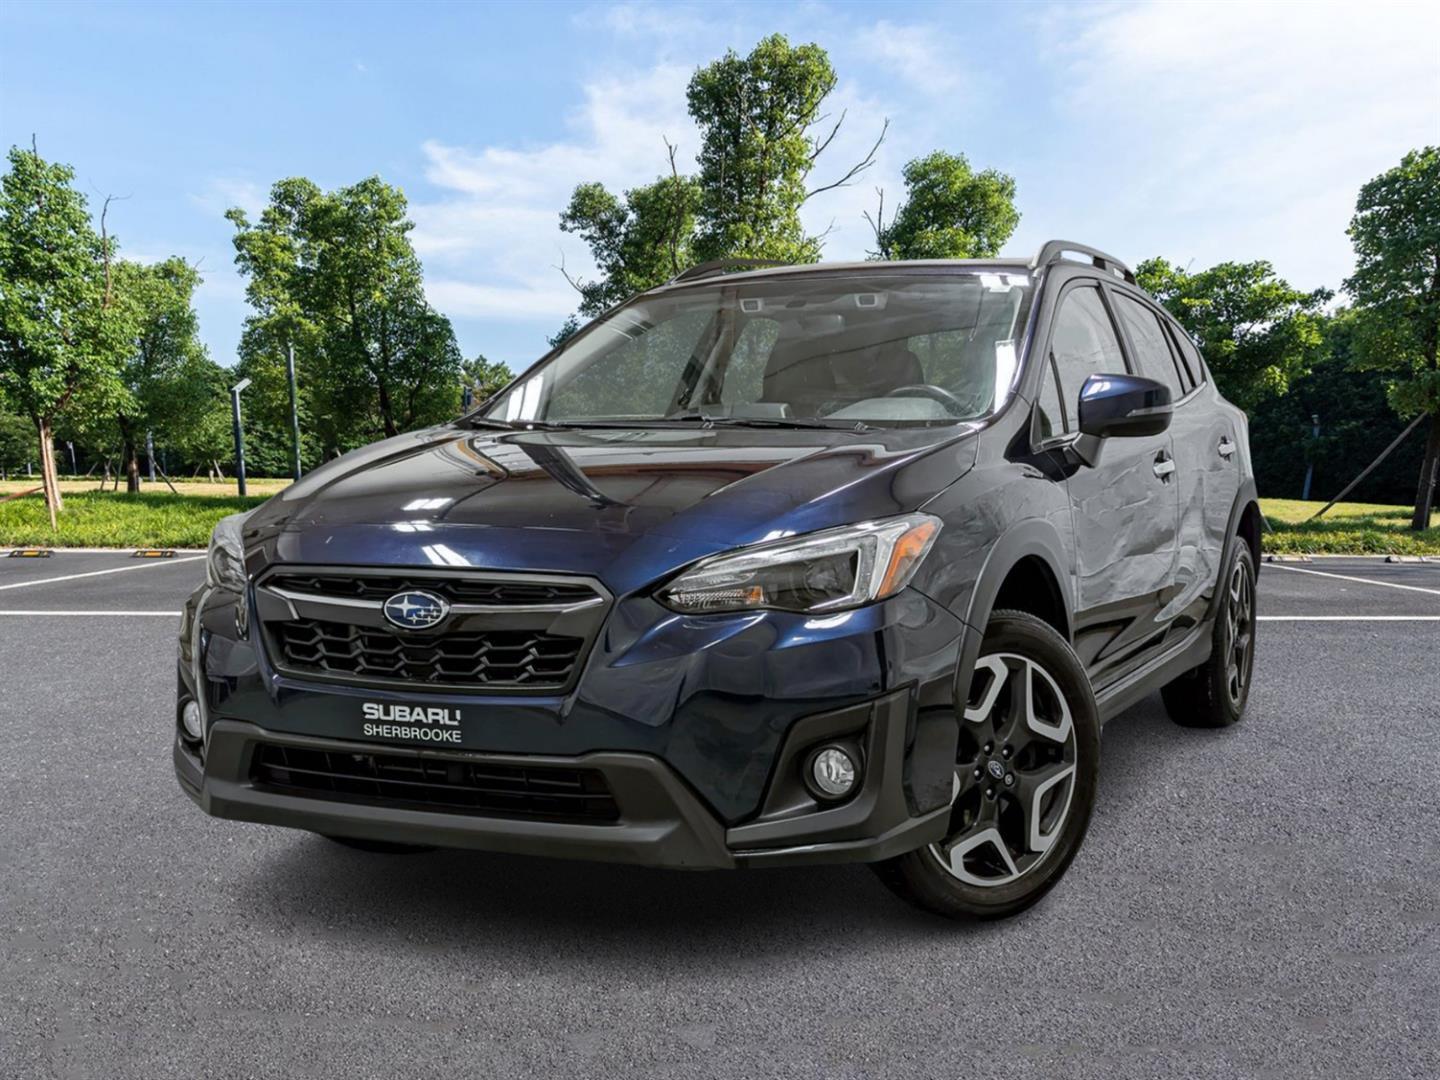 2019 Subaru Crosstrek Limited CVT